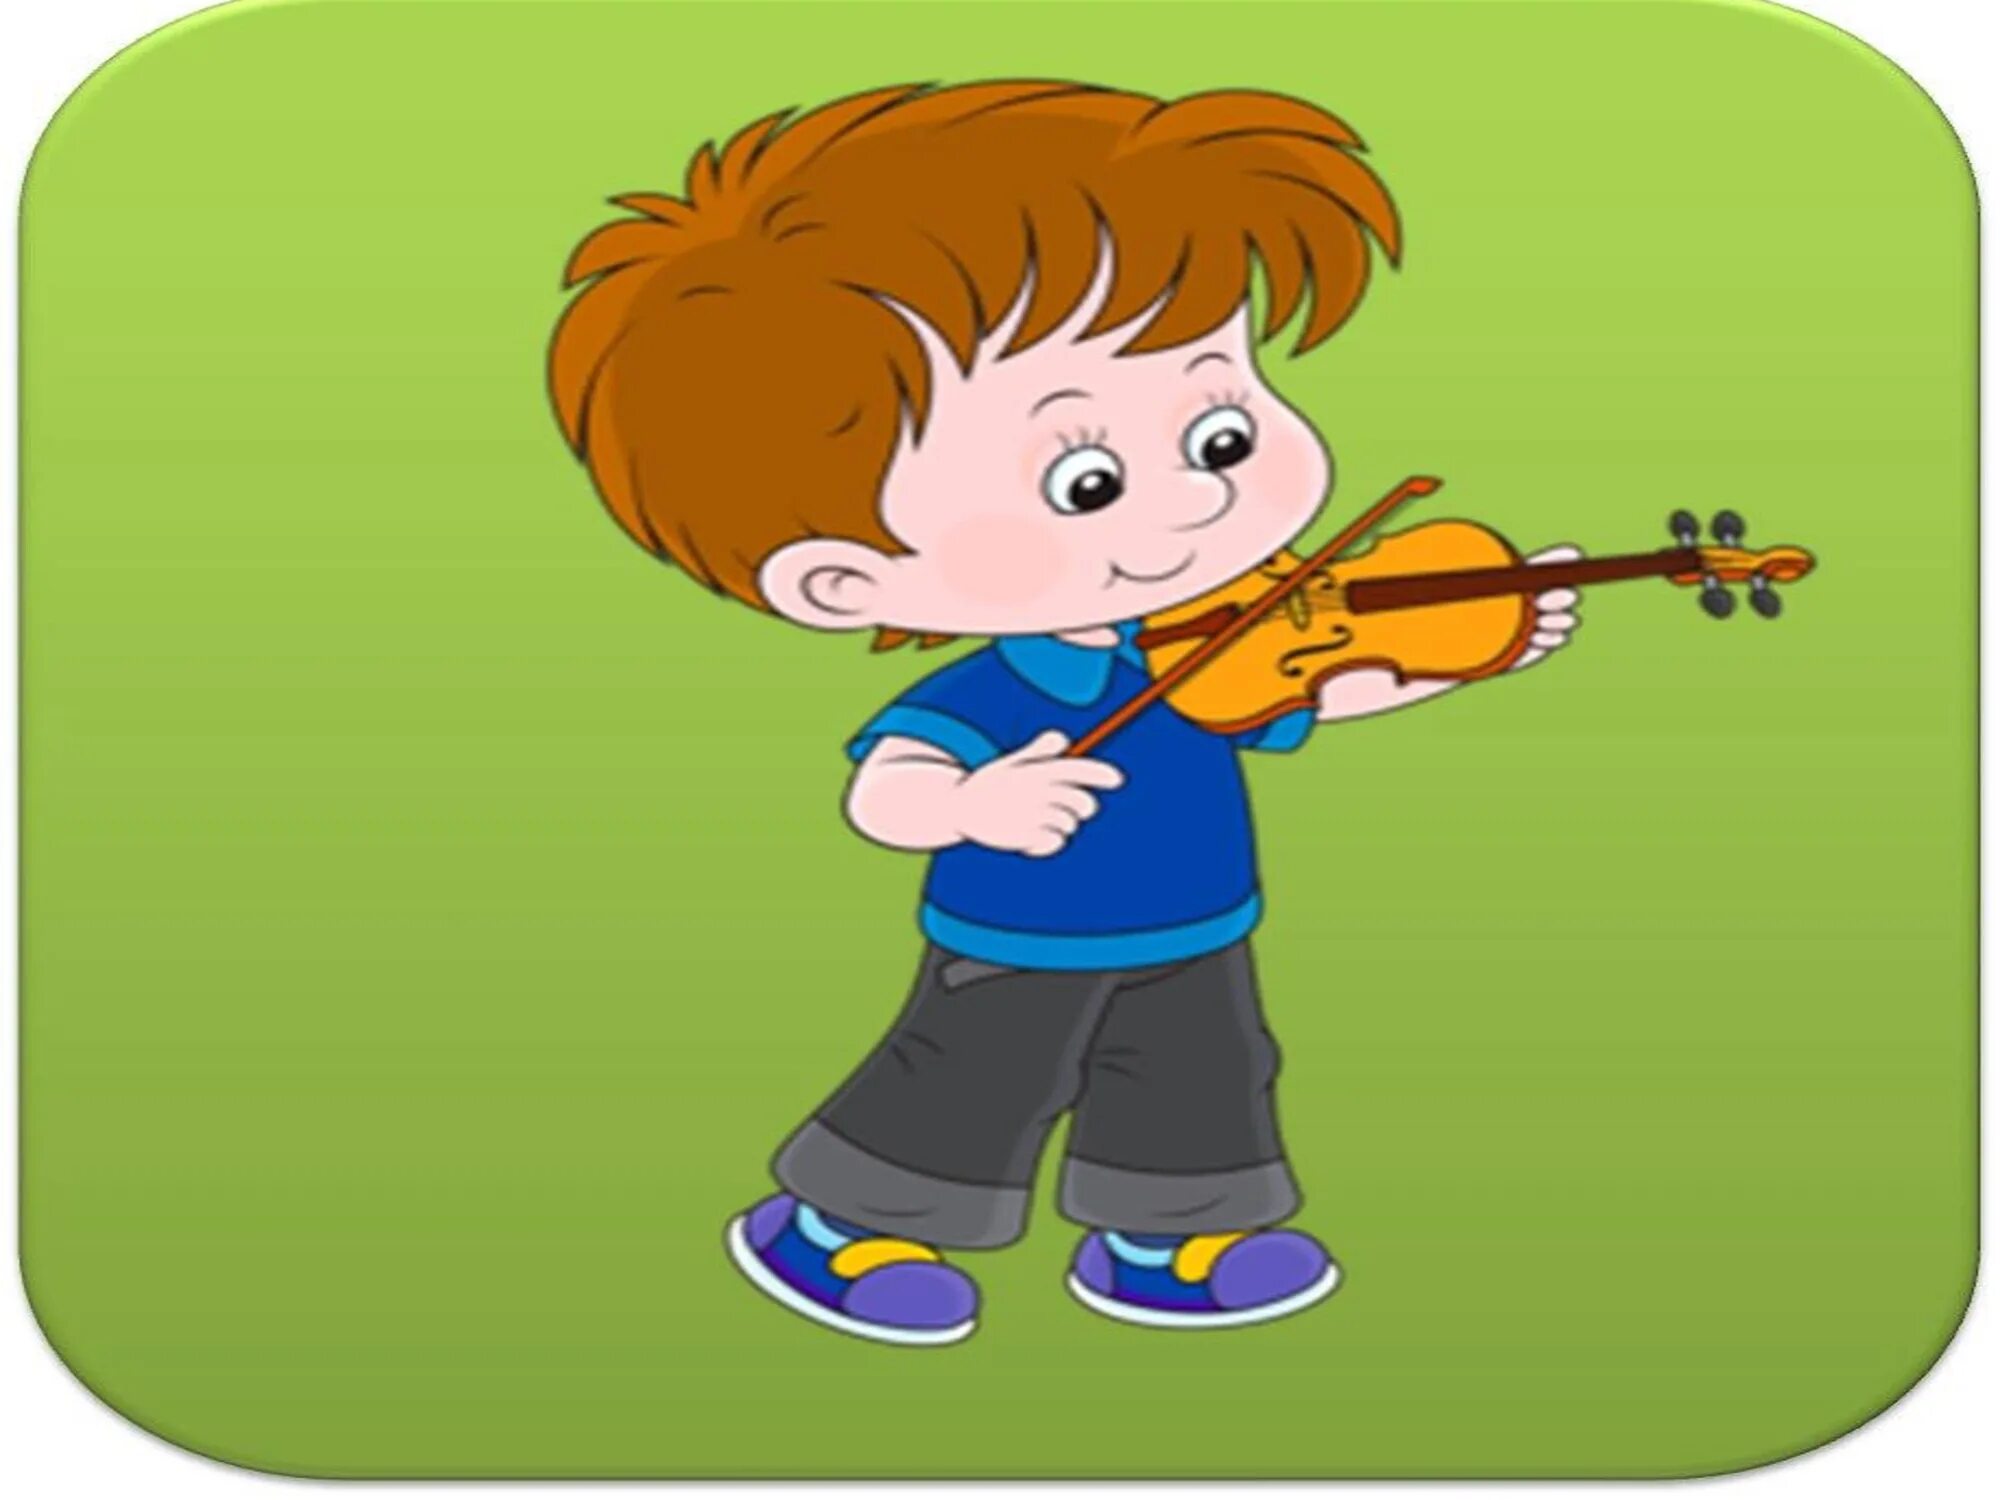 Дети играют на музыкальных инструментах. Музыкальные картинки для детей. Нарисованные дети играют на музыкальных инструментах. Музыкальные инструменты для детей. Игры музыка петь